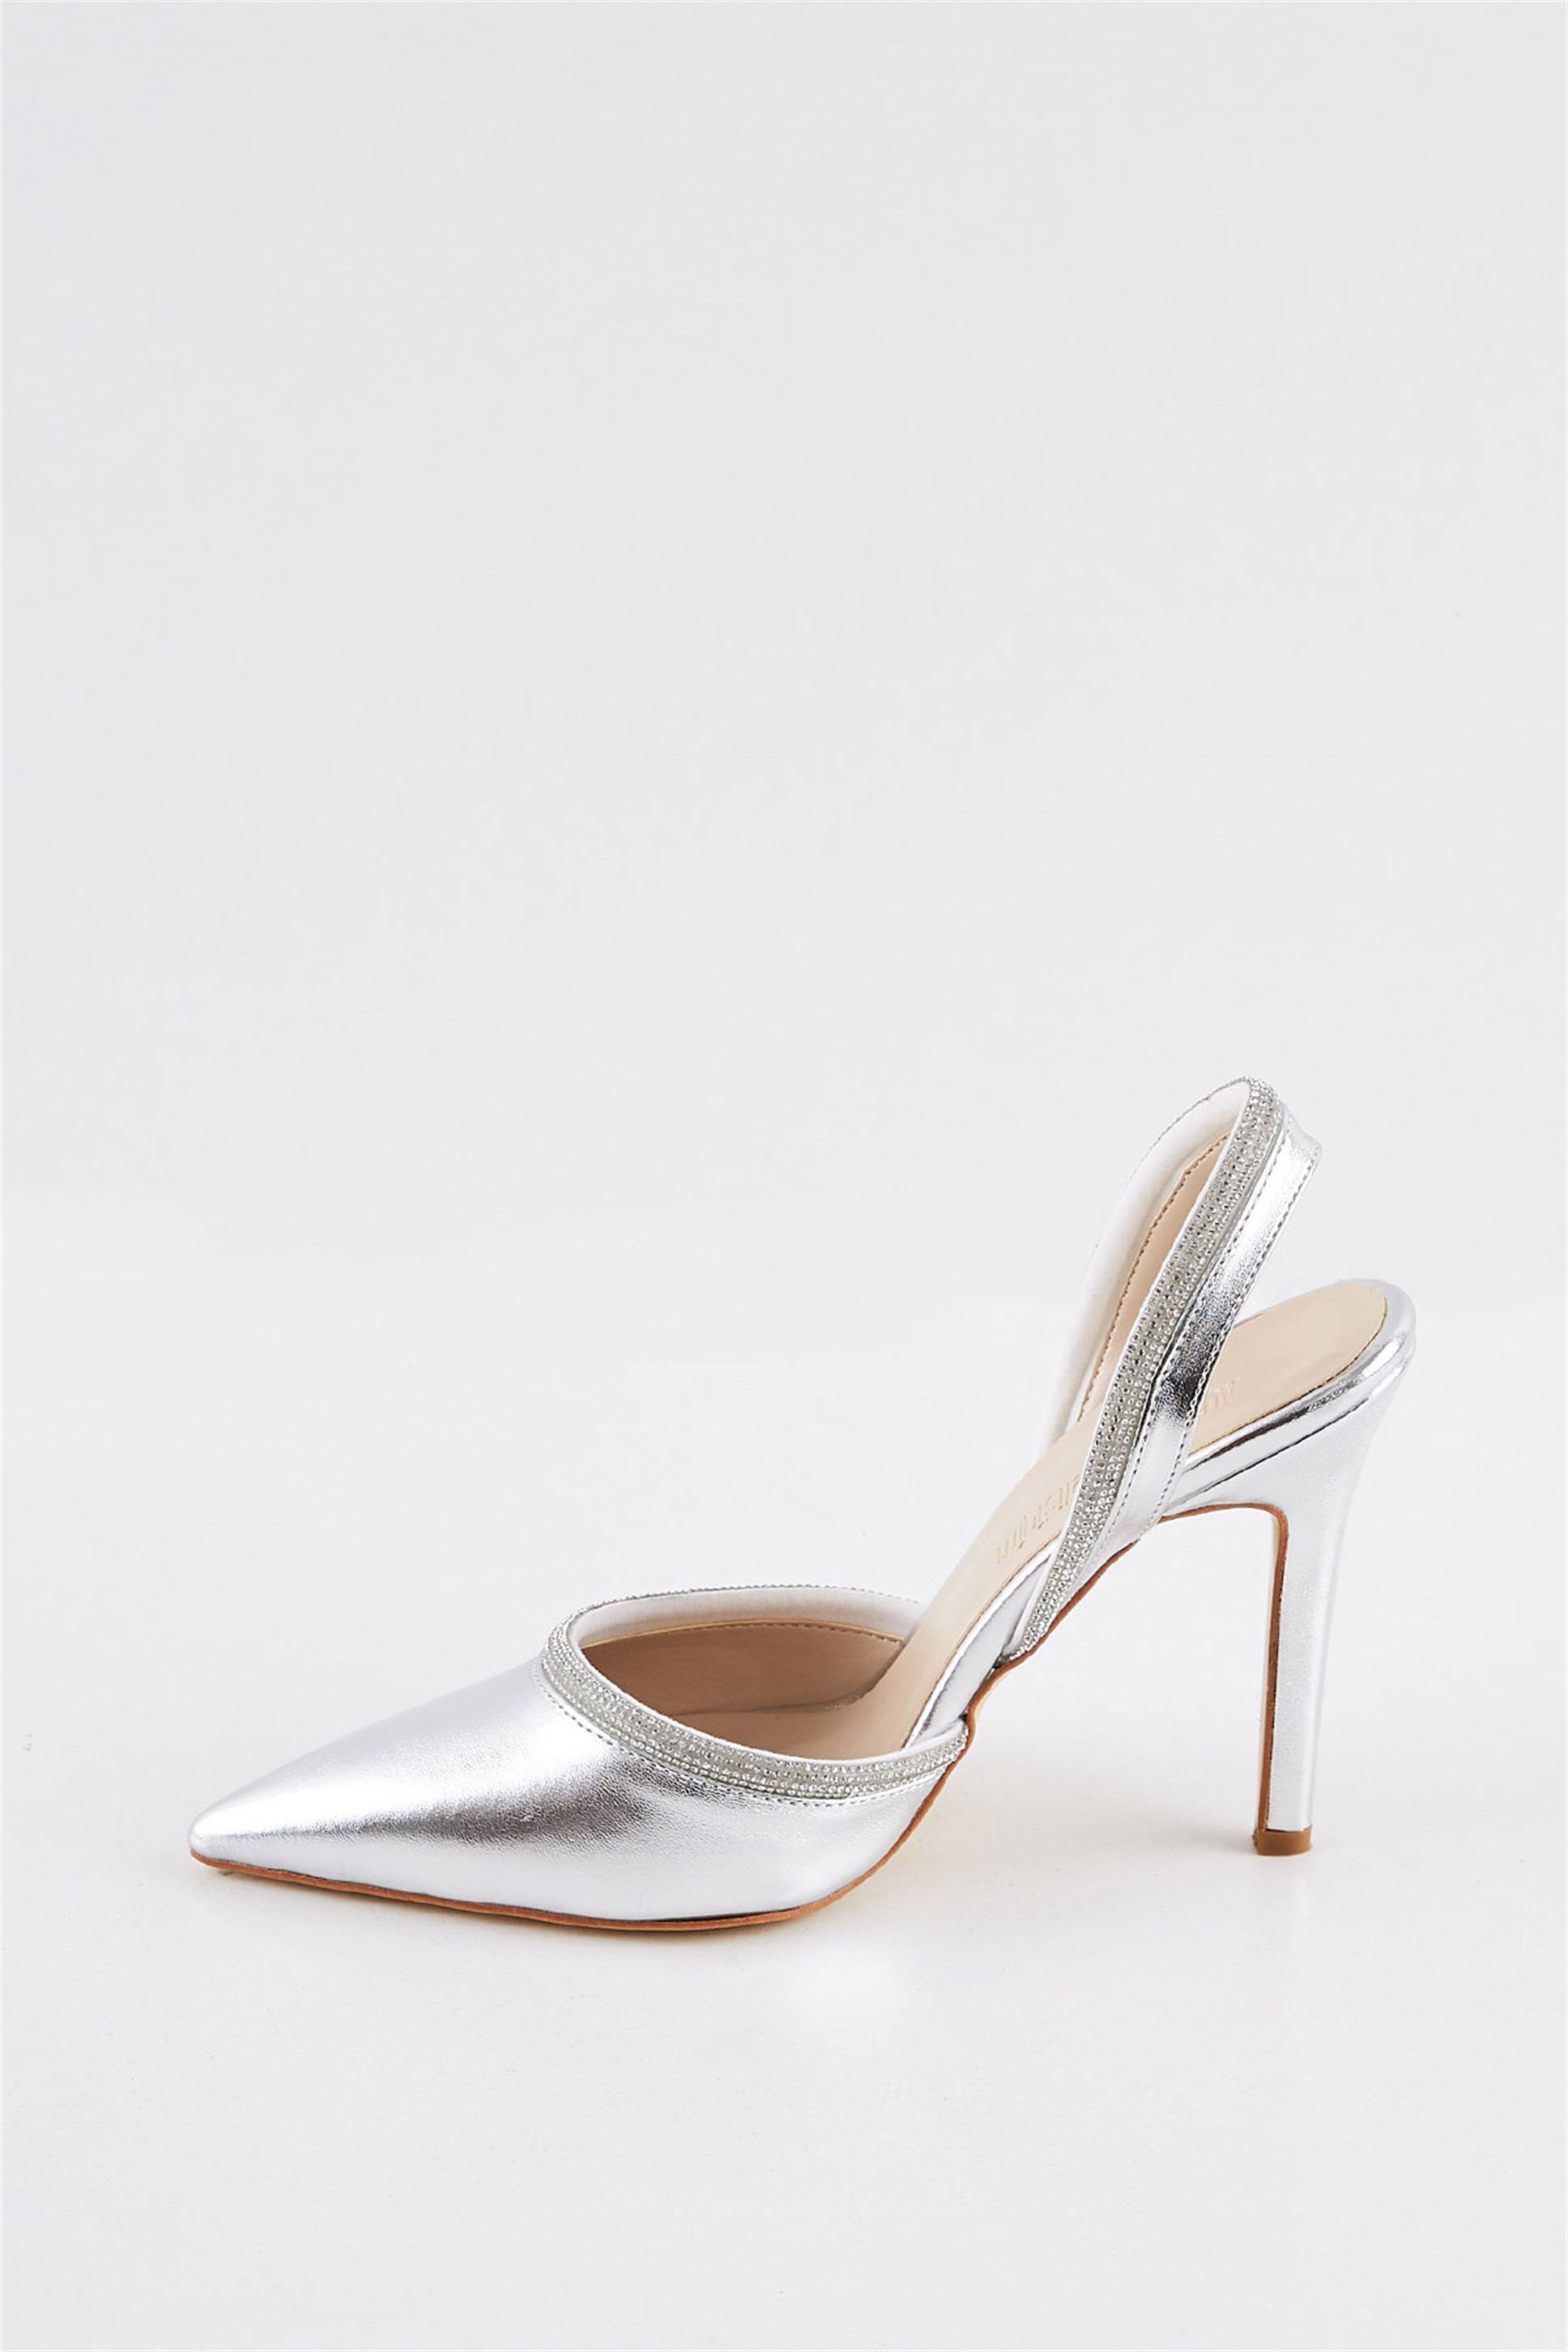 Barbiy Saten Gümüş Lame Arkası Açık Taşlı Topuklu Kadın Stiletto Ayakkabı